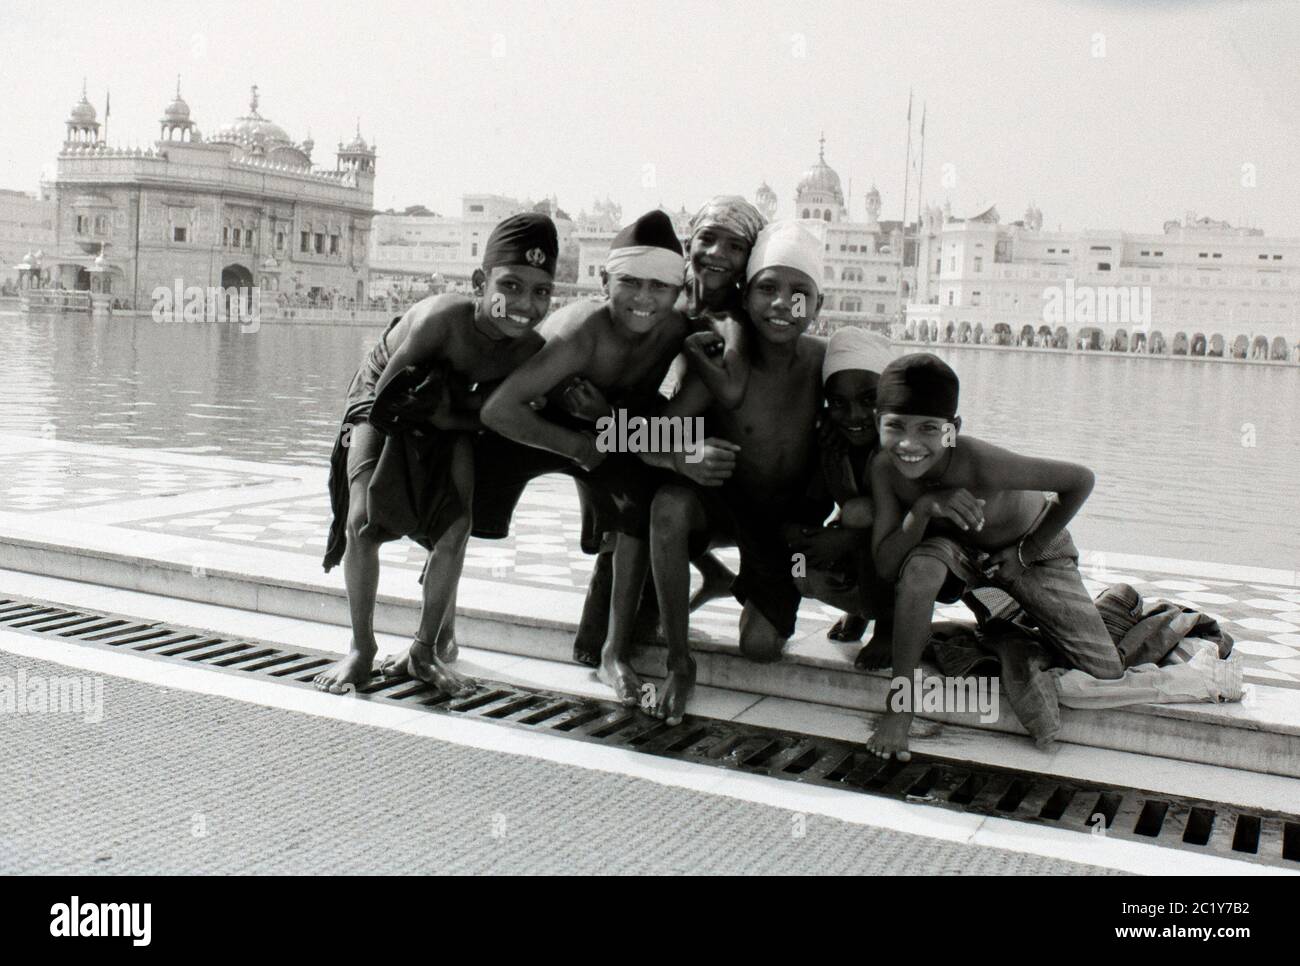 Bambini indiani che posano per una fotografia, Tempio d'Oro, Amritsar, India Foto Stock